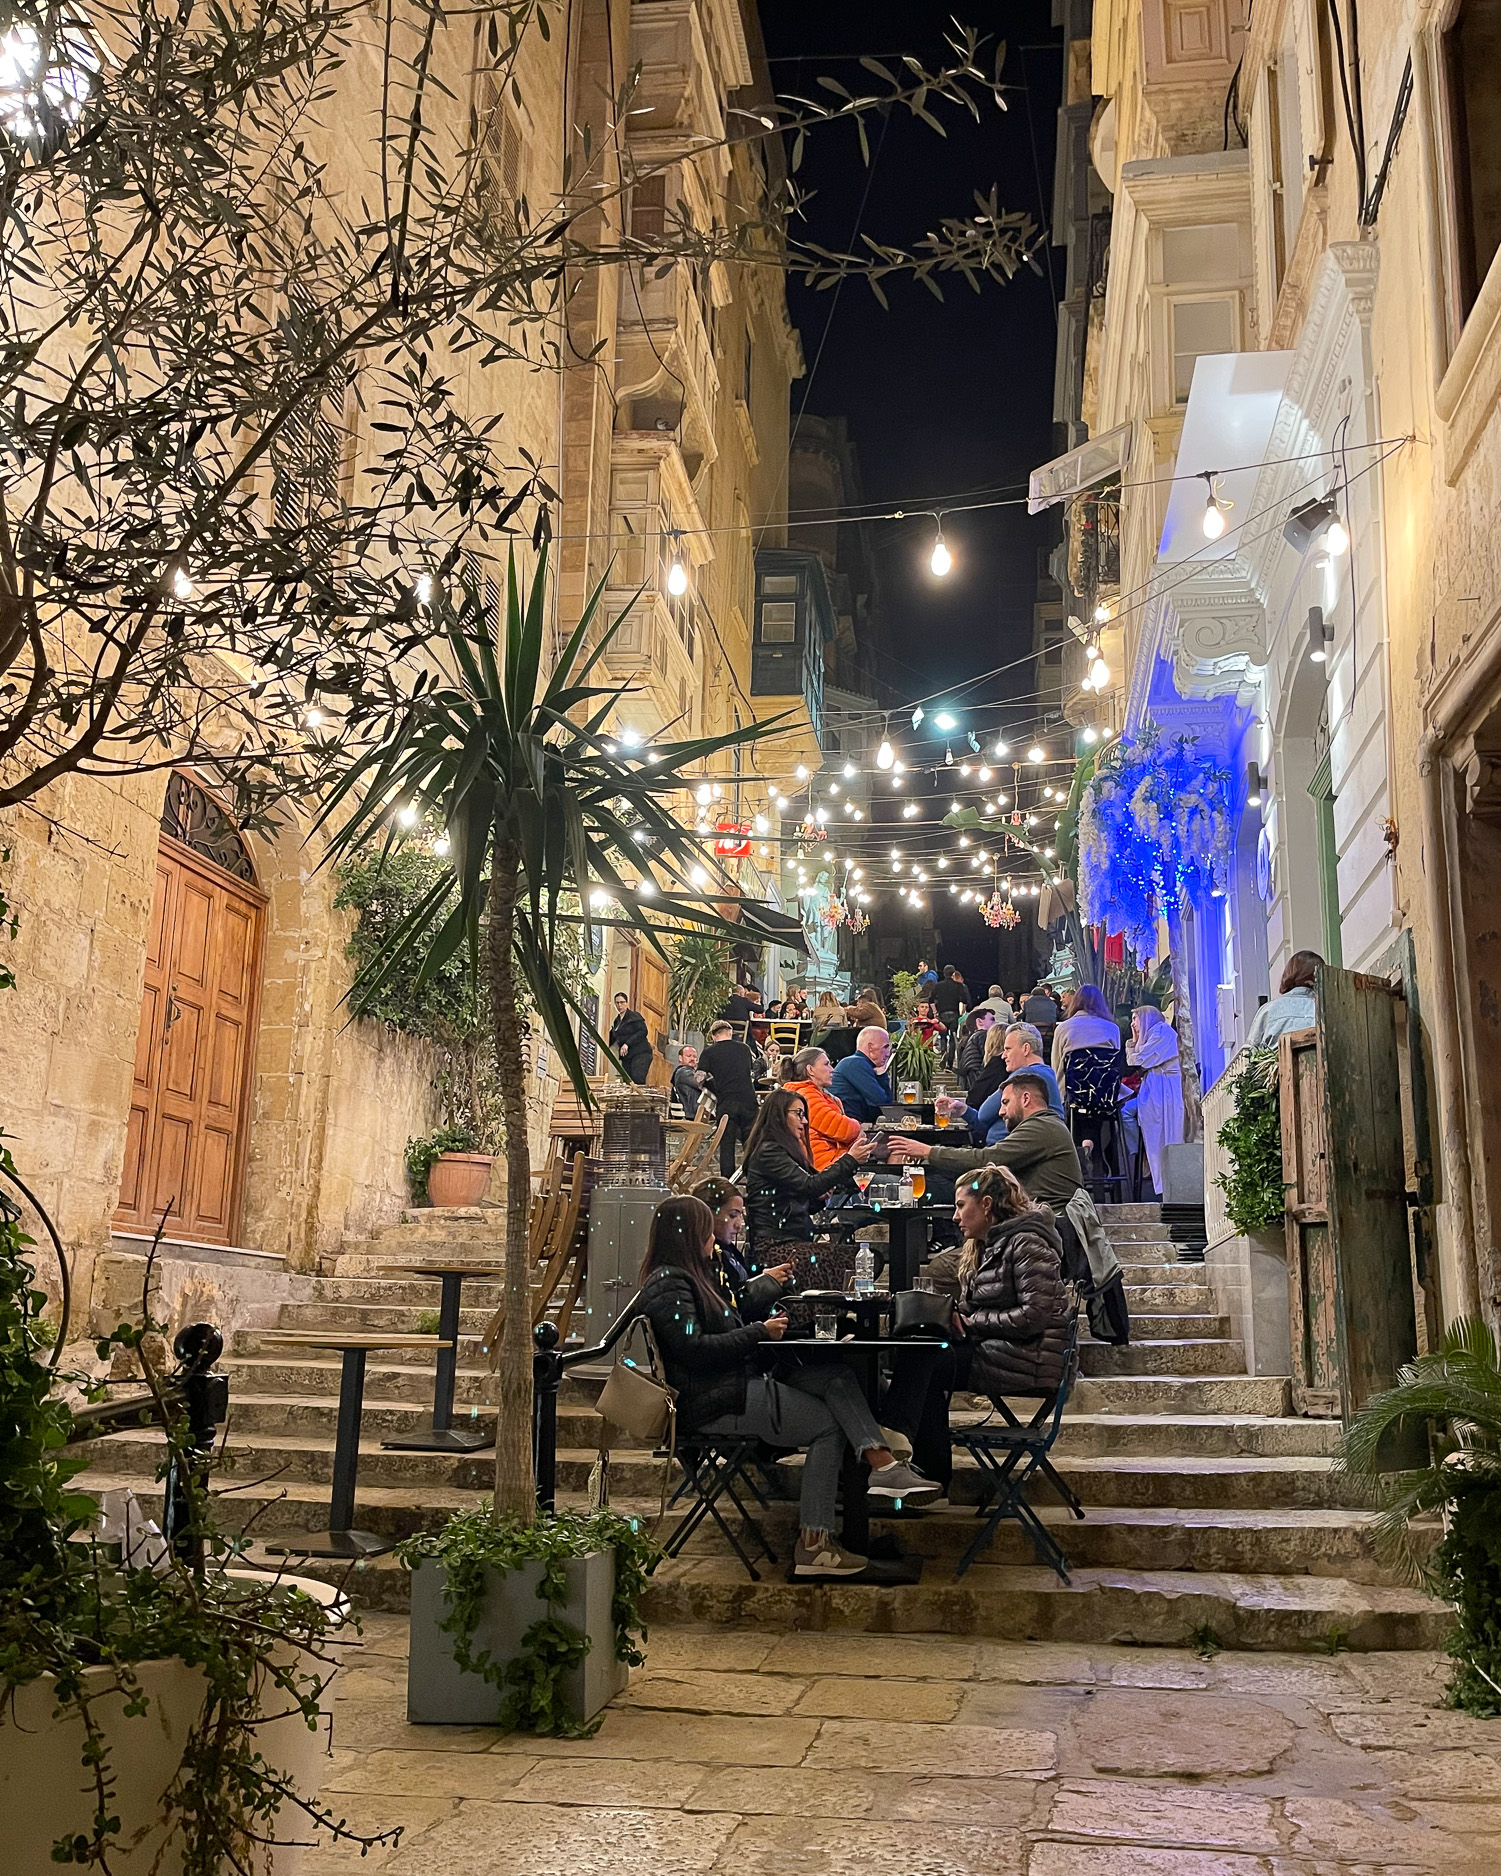 St Lucia Street Valletta Malta Photo Heatheronhertravels.com